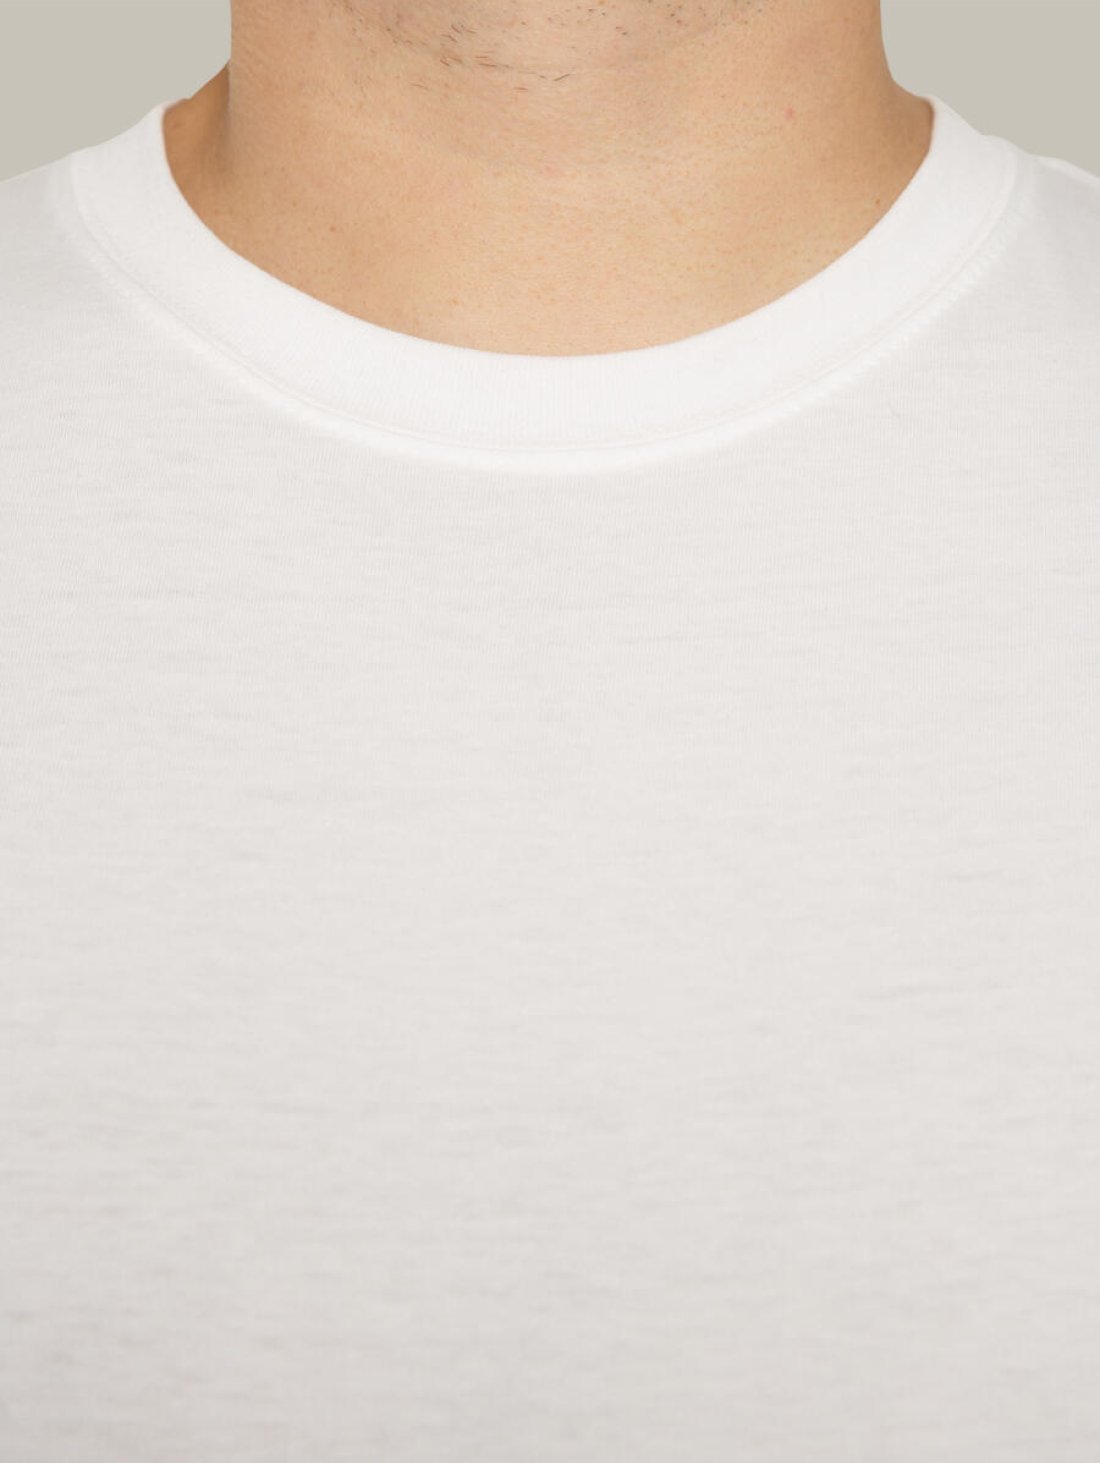 Чоловіча футболка, біла з принтом аватара Hopper 041